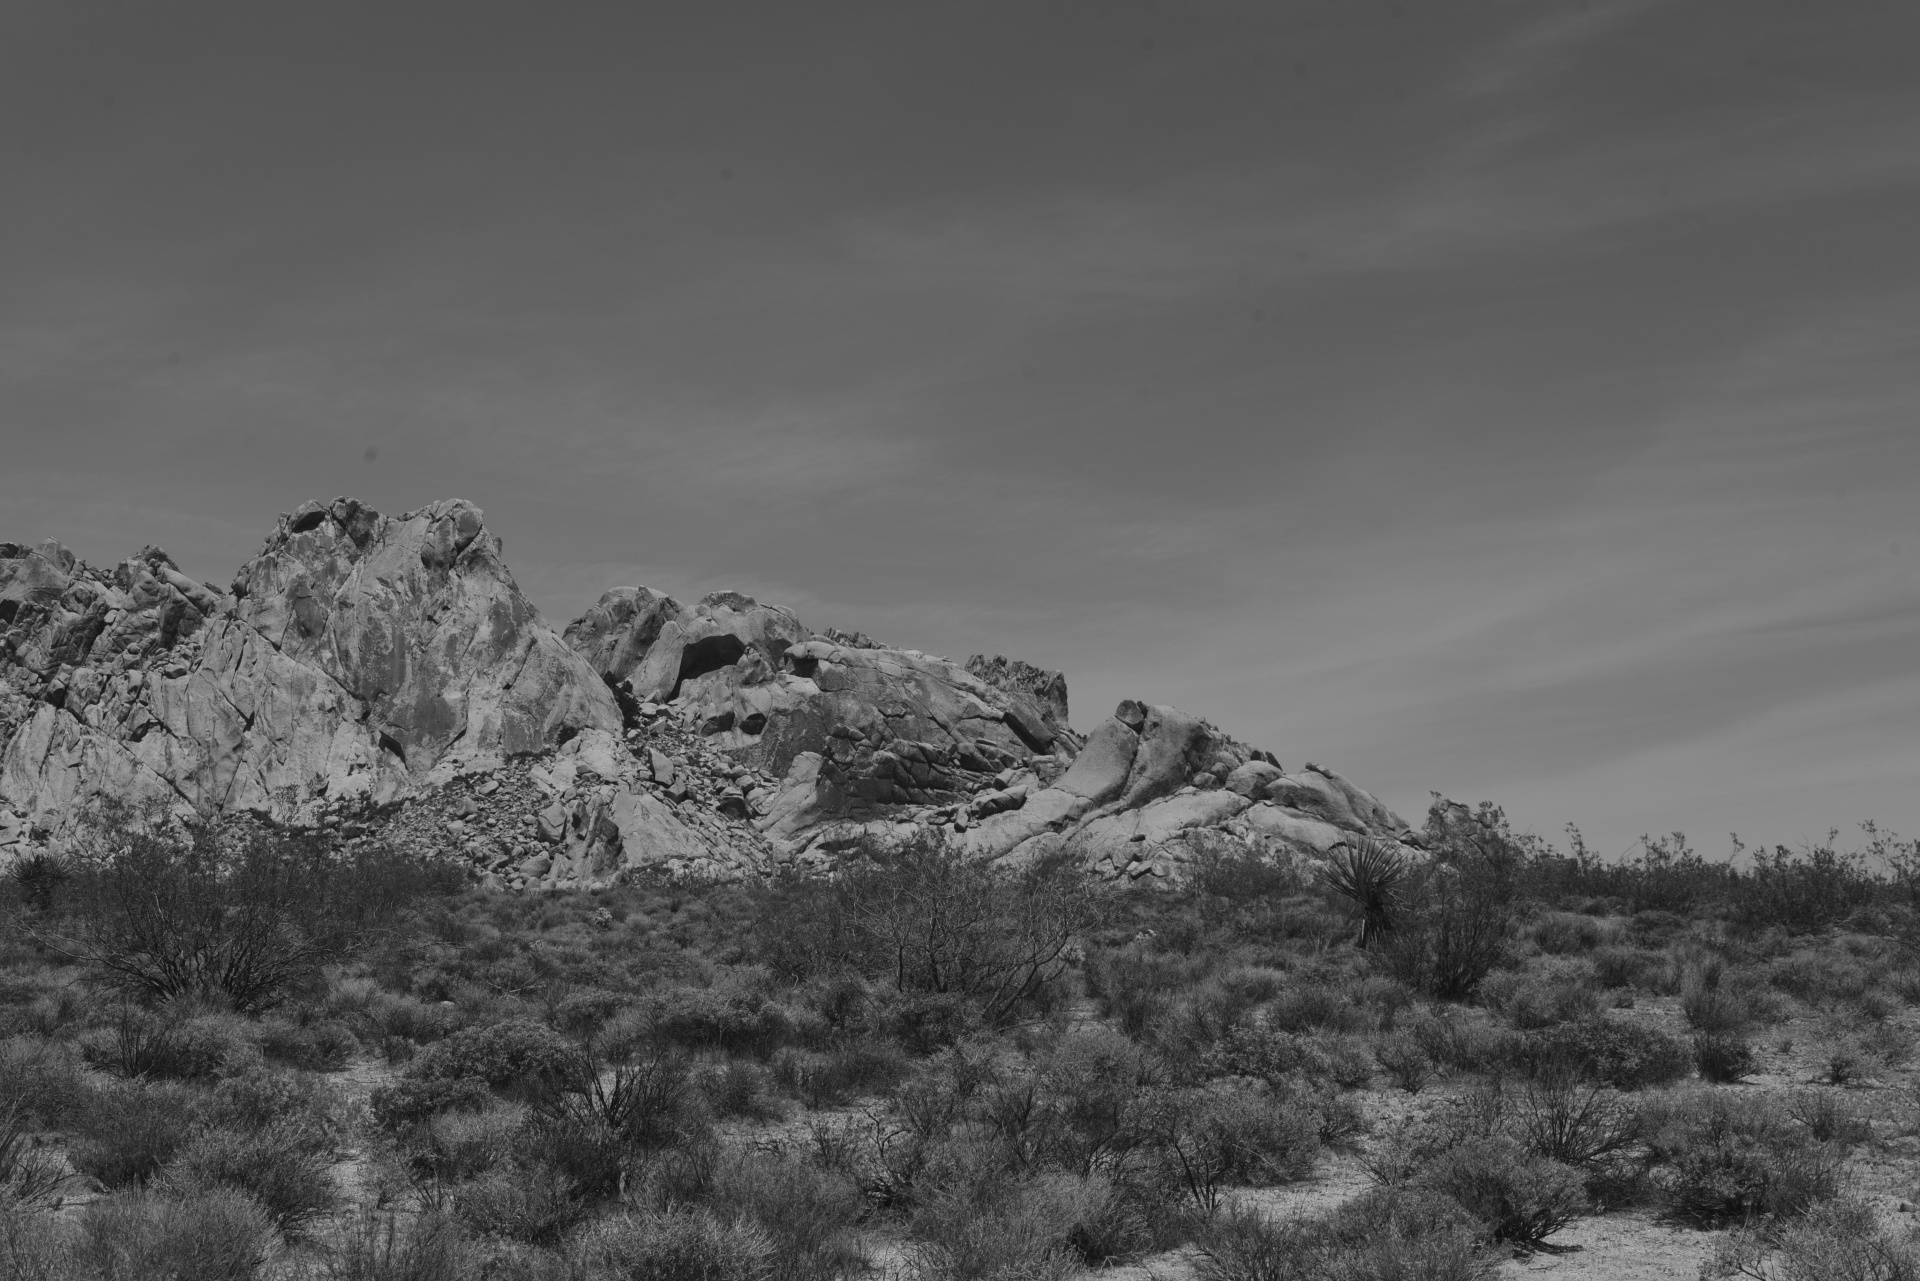 Desert Landscape In Black And White